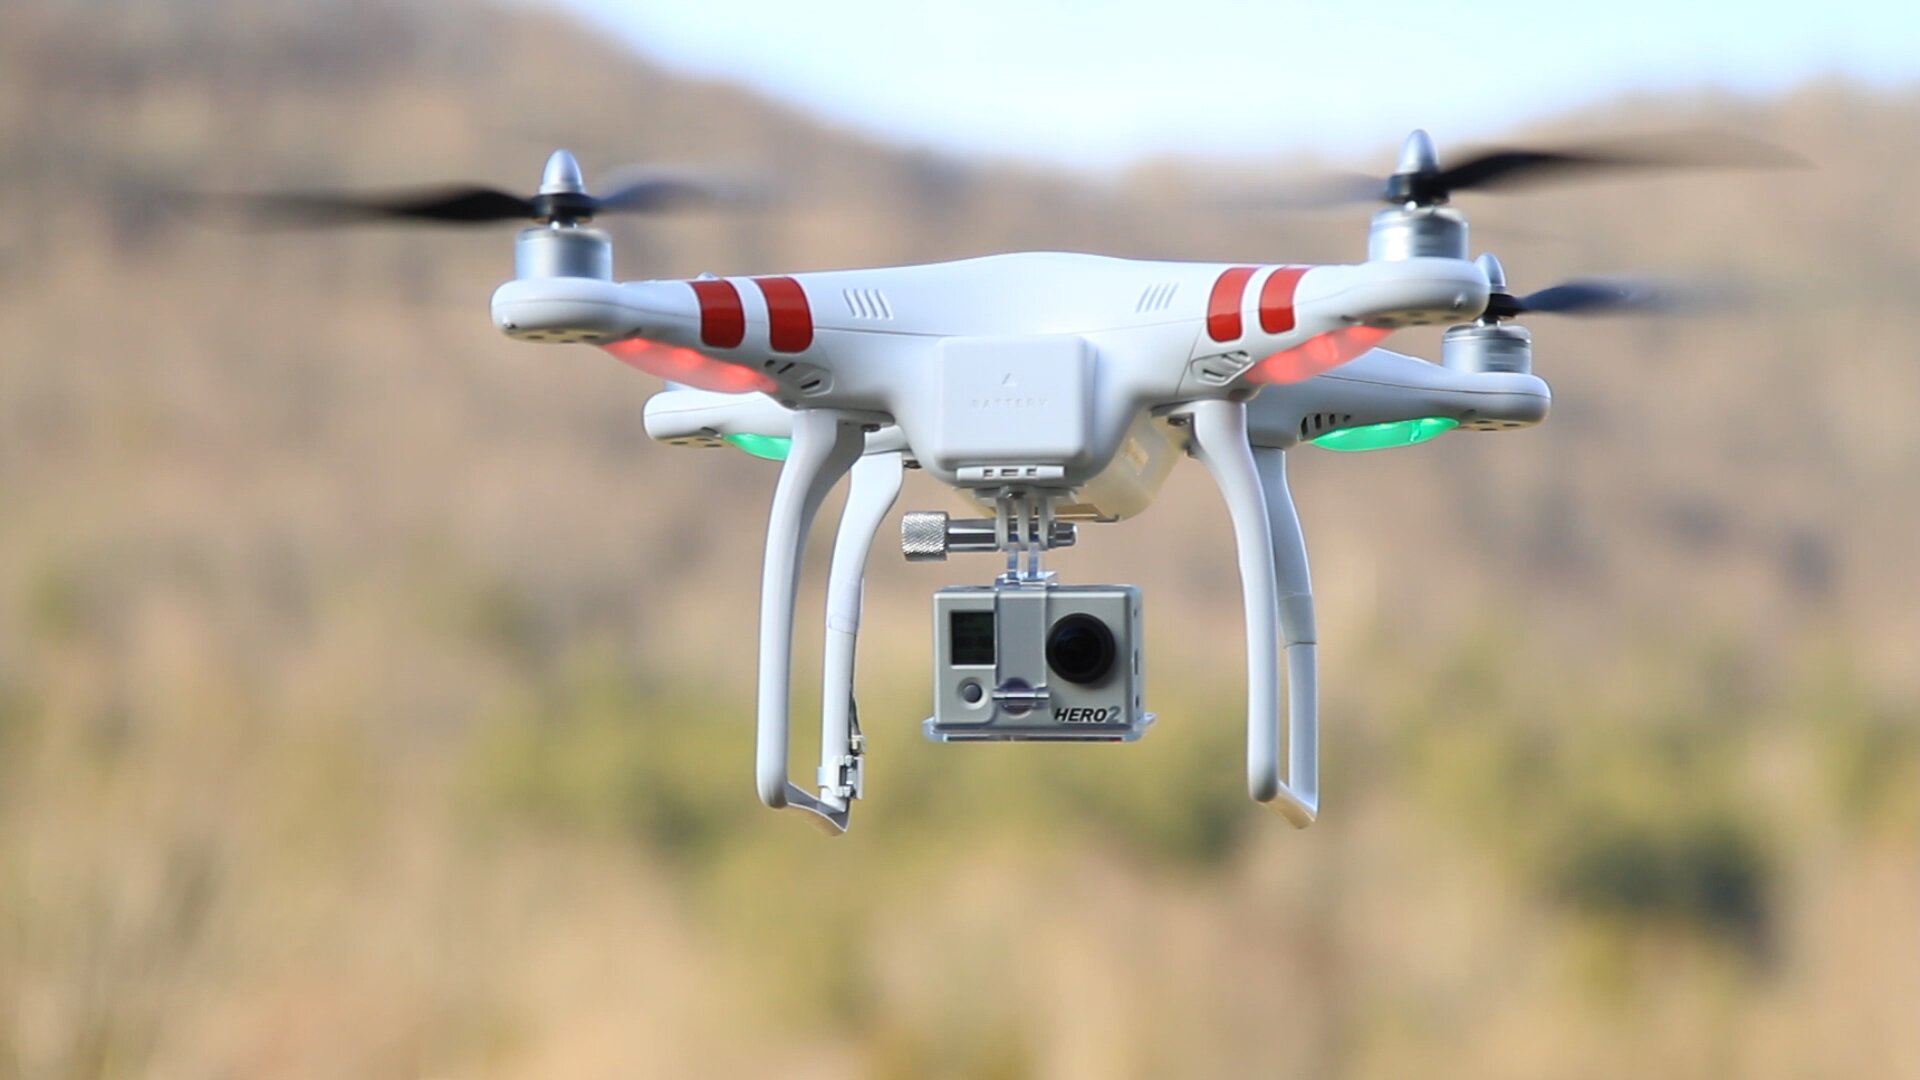 Ofrecemos servicio de fotografia aerea, ventas y reparacion de Drones y todo tipo de RC